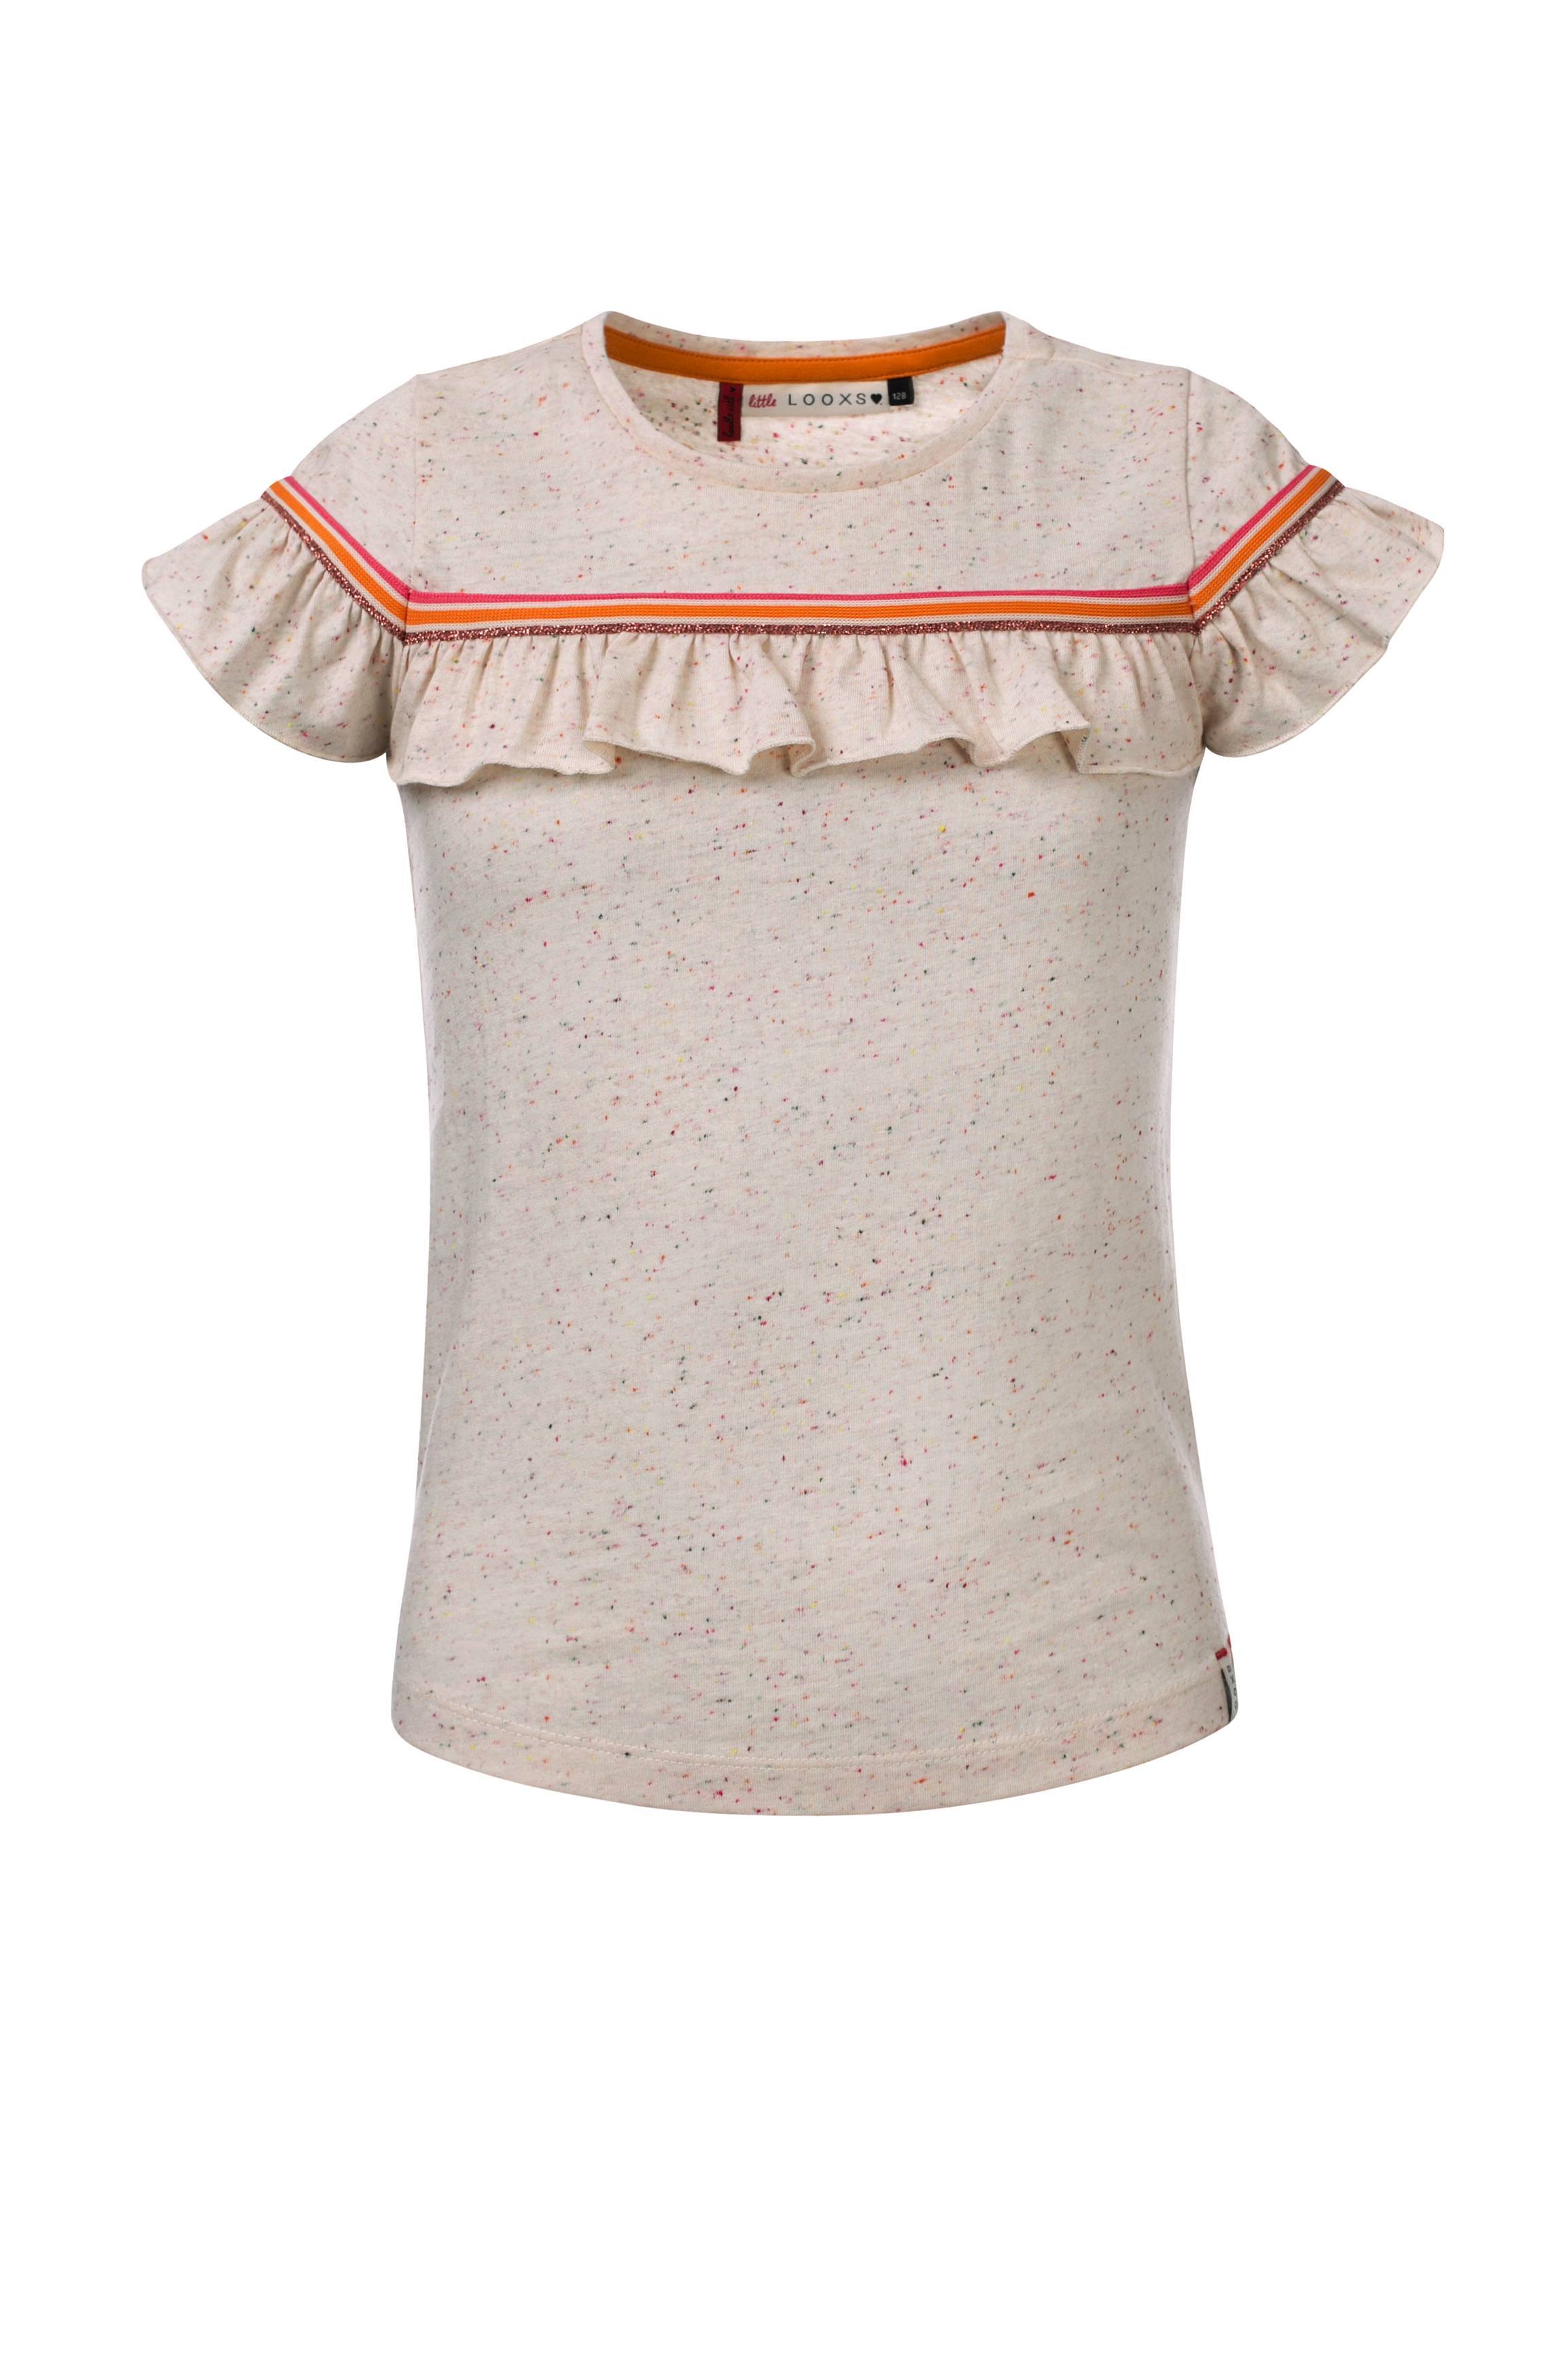 Meisjes T-Shirt Ruffle S.Sleeve van Little Looxs in de kleur Spikkel Sand in maat 128.